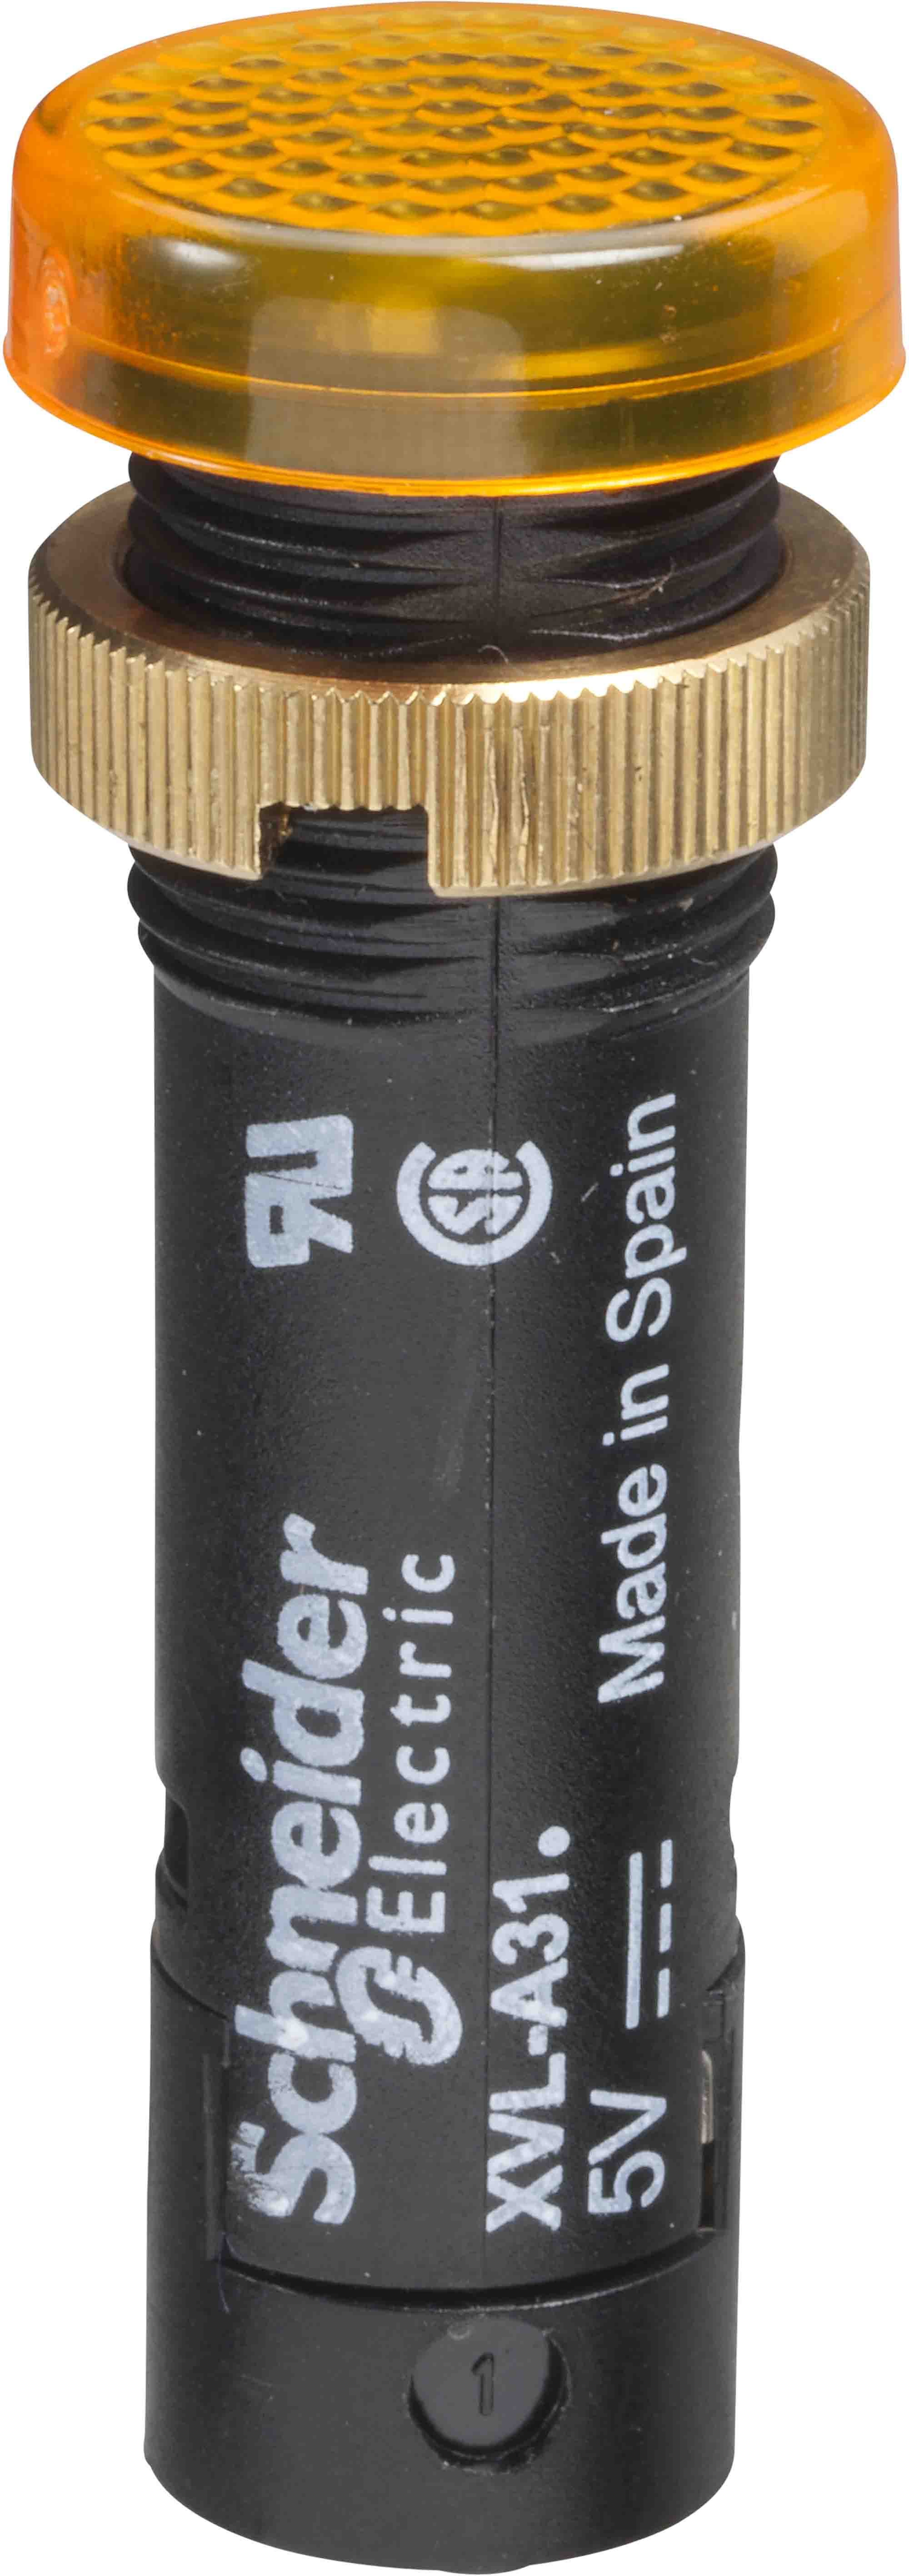 Schneider Electric XVL LED Schalttafel-Anzeigelampe Gelb 12V, Montage-Ø 12mm